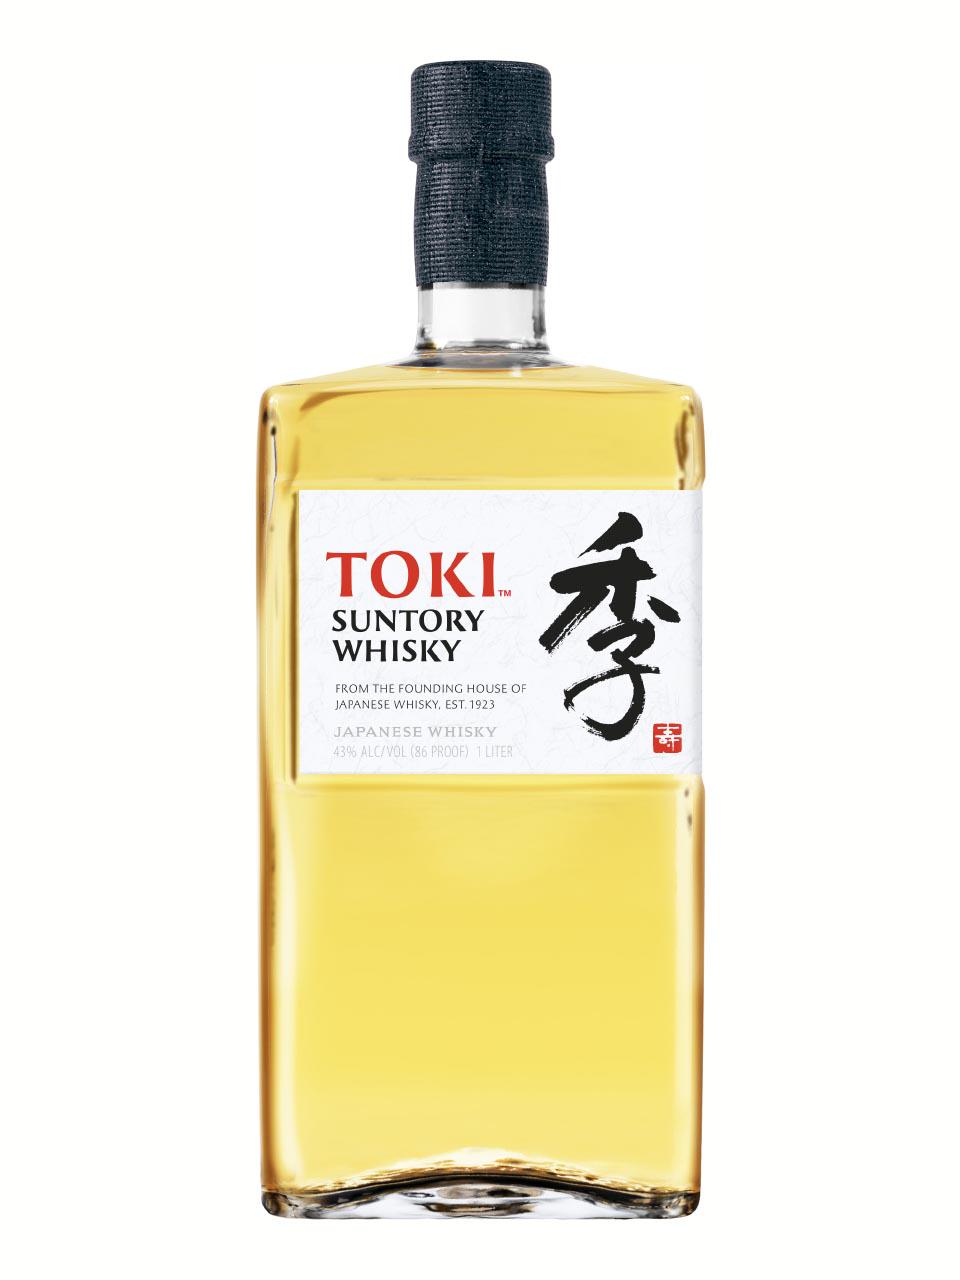 Toki Suntory Japanese Blended Whisky 43% 1L | Frankfurt Airport Online  Shopping